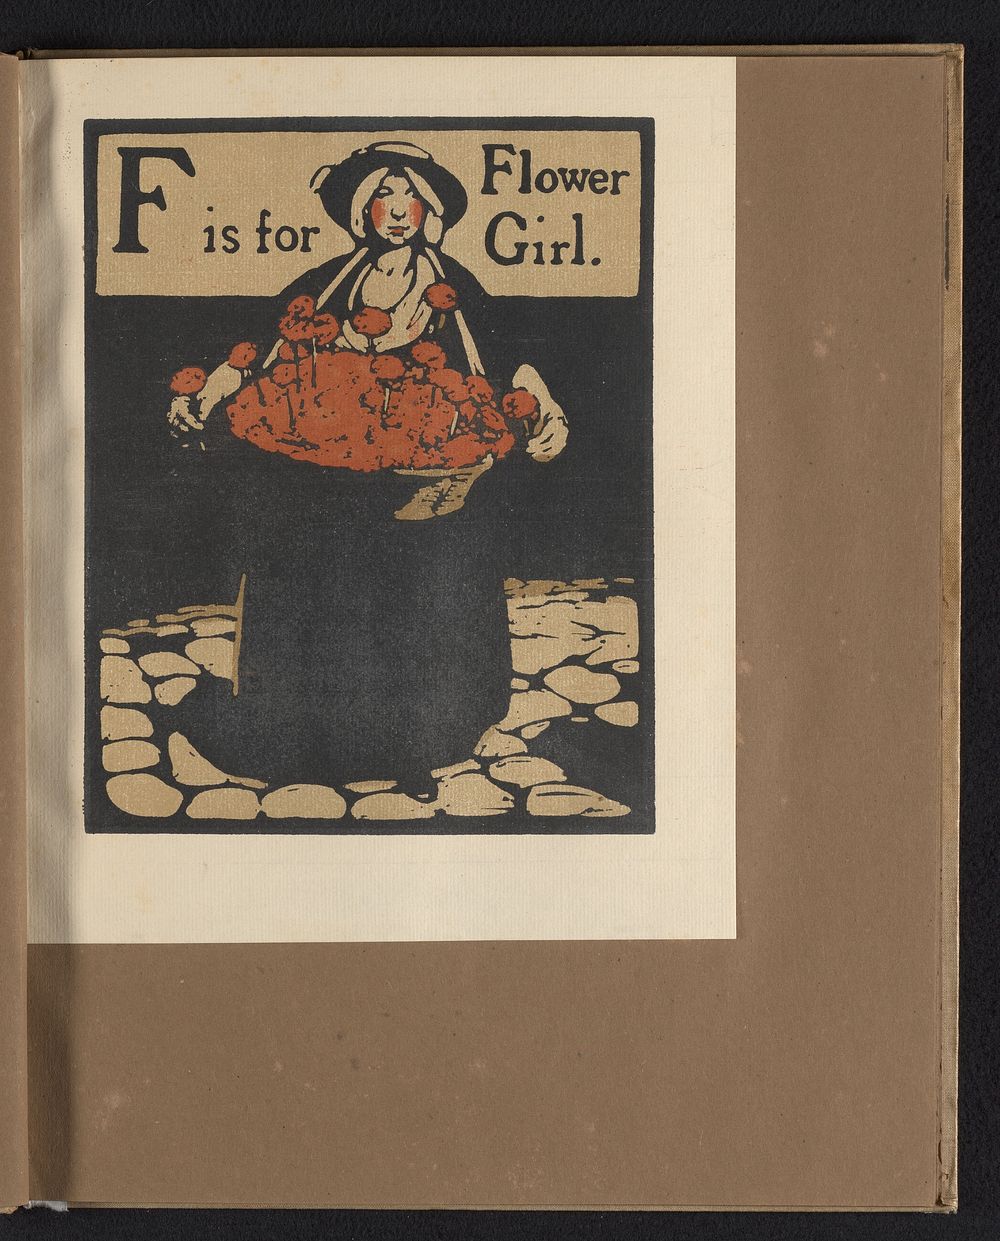 F is for Flower Girl (1898) by William Nicholson and William Heinemann